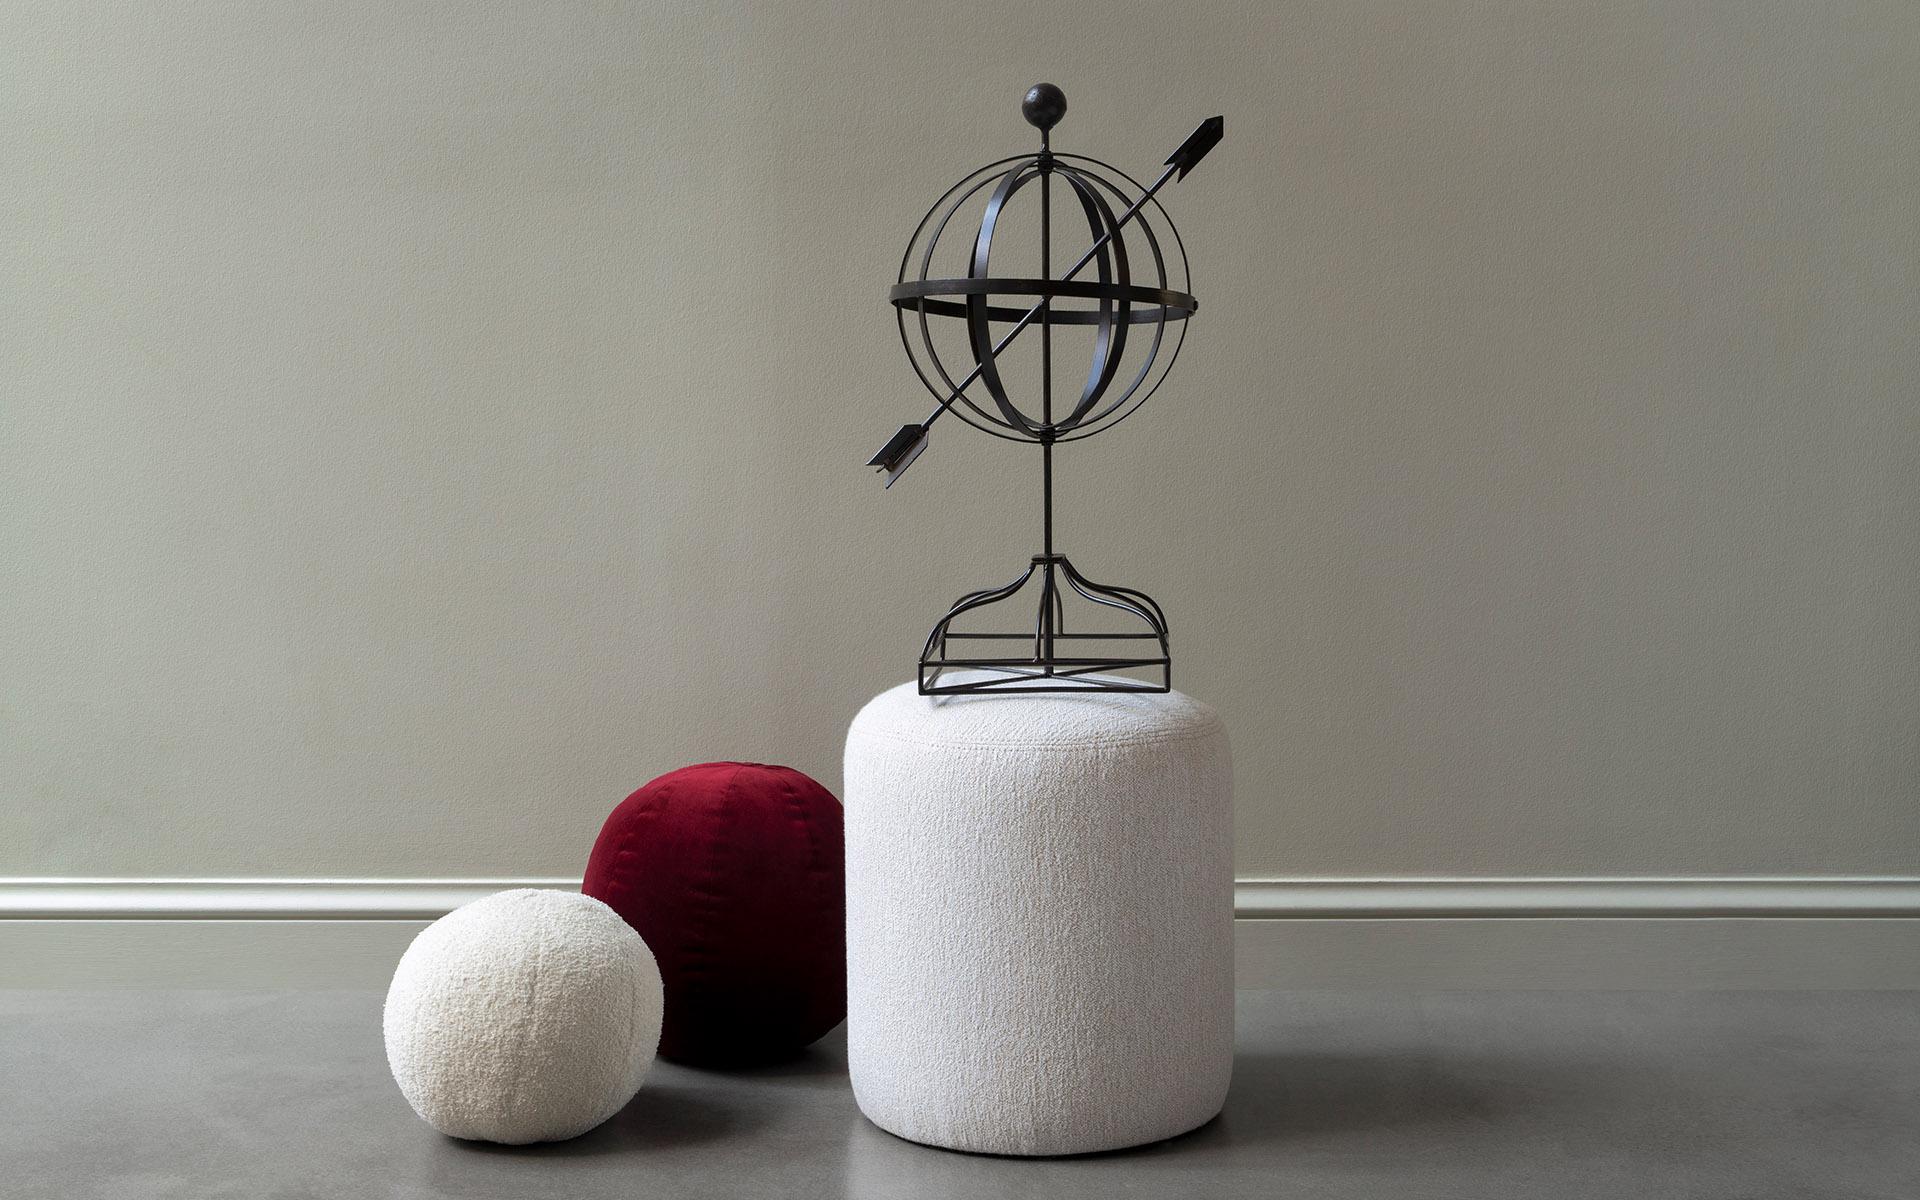 Fuyu Cylinder Pouf verleiht mit seinem modernen Design vielen Räumen eine ästhetische Atmosphäre und bietet gleichzeitig ein komfortables Sitzerlebnis. Mit seiner minimalistischen und kompakten Struktur verleiht er Ihrer Dekoration einen eleganten